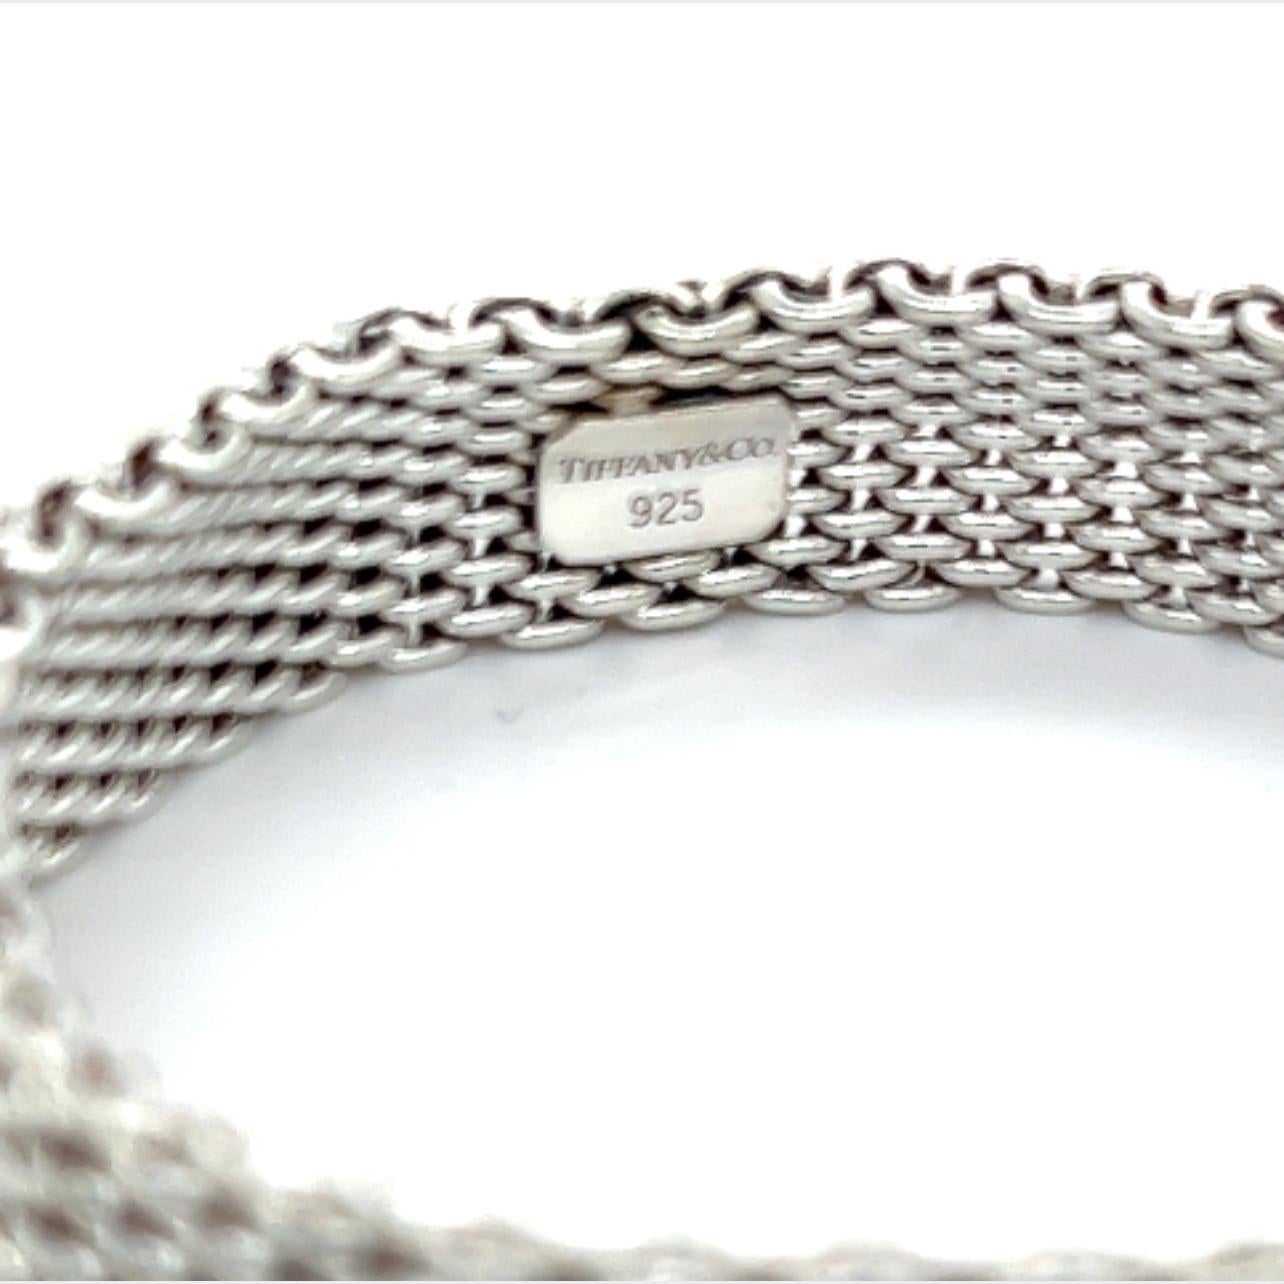 tiffany's mesh bracelet